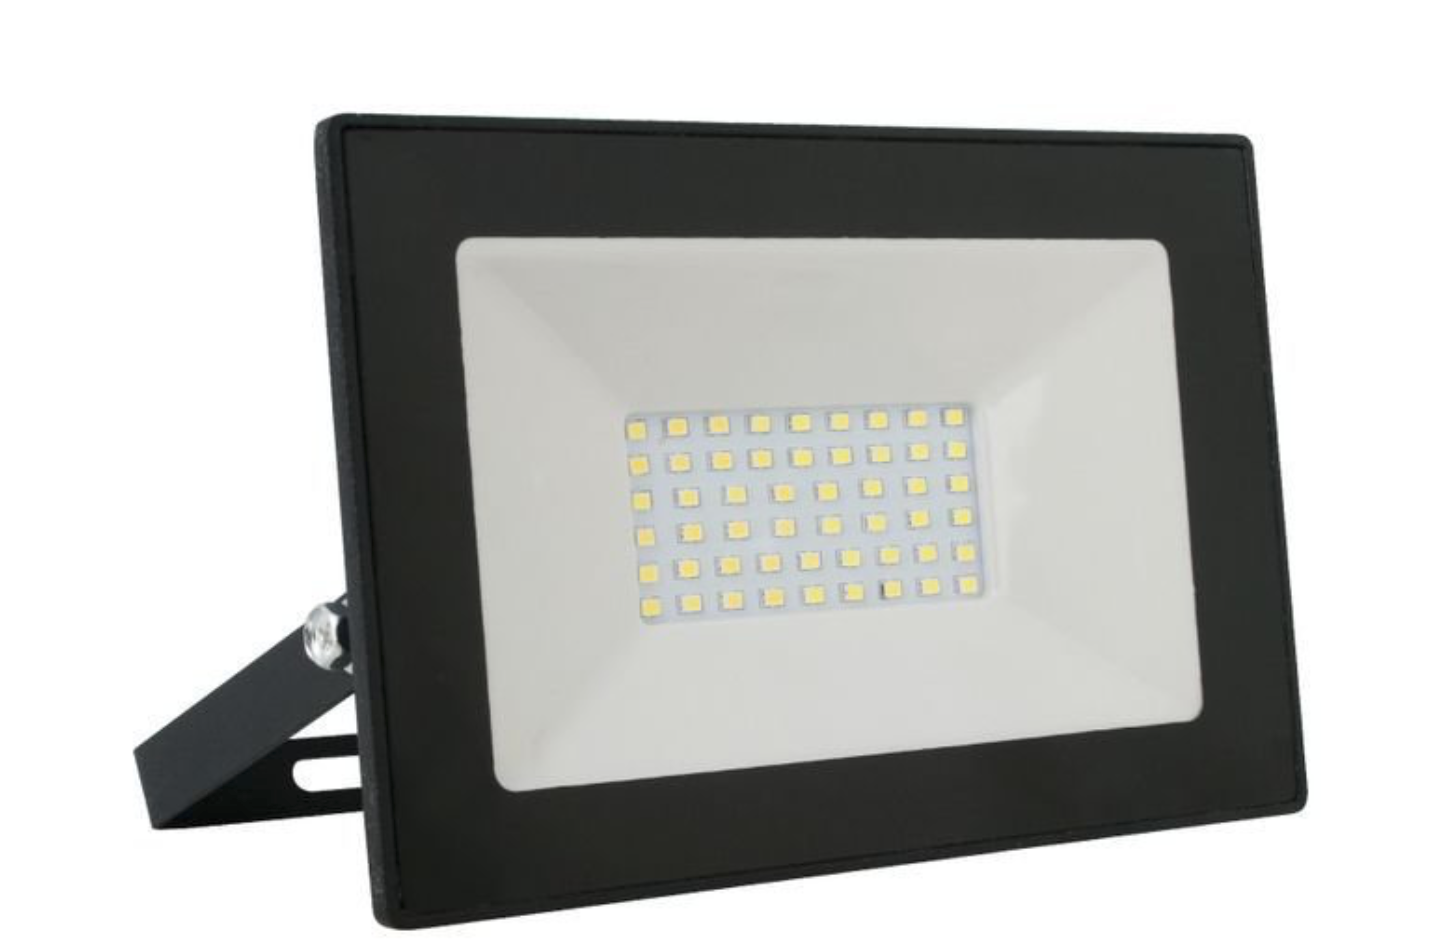 Прожектор светодиодный Ultraflash LFL-5001 C02 черный (LED SMD прожектор, 50 Вт, 230В, 6500К)